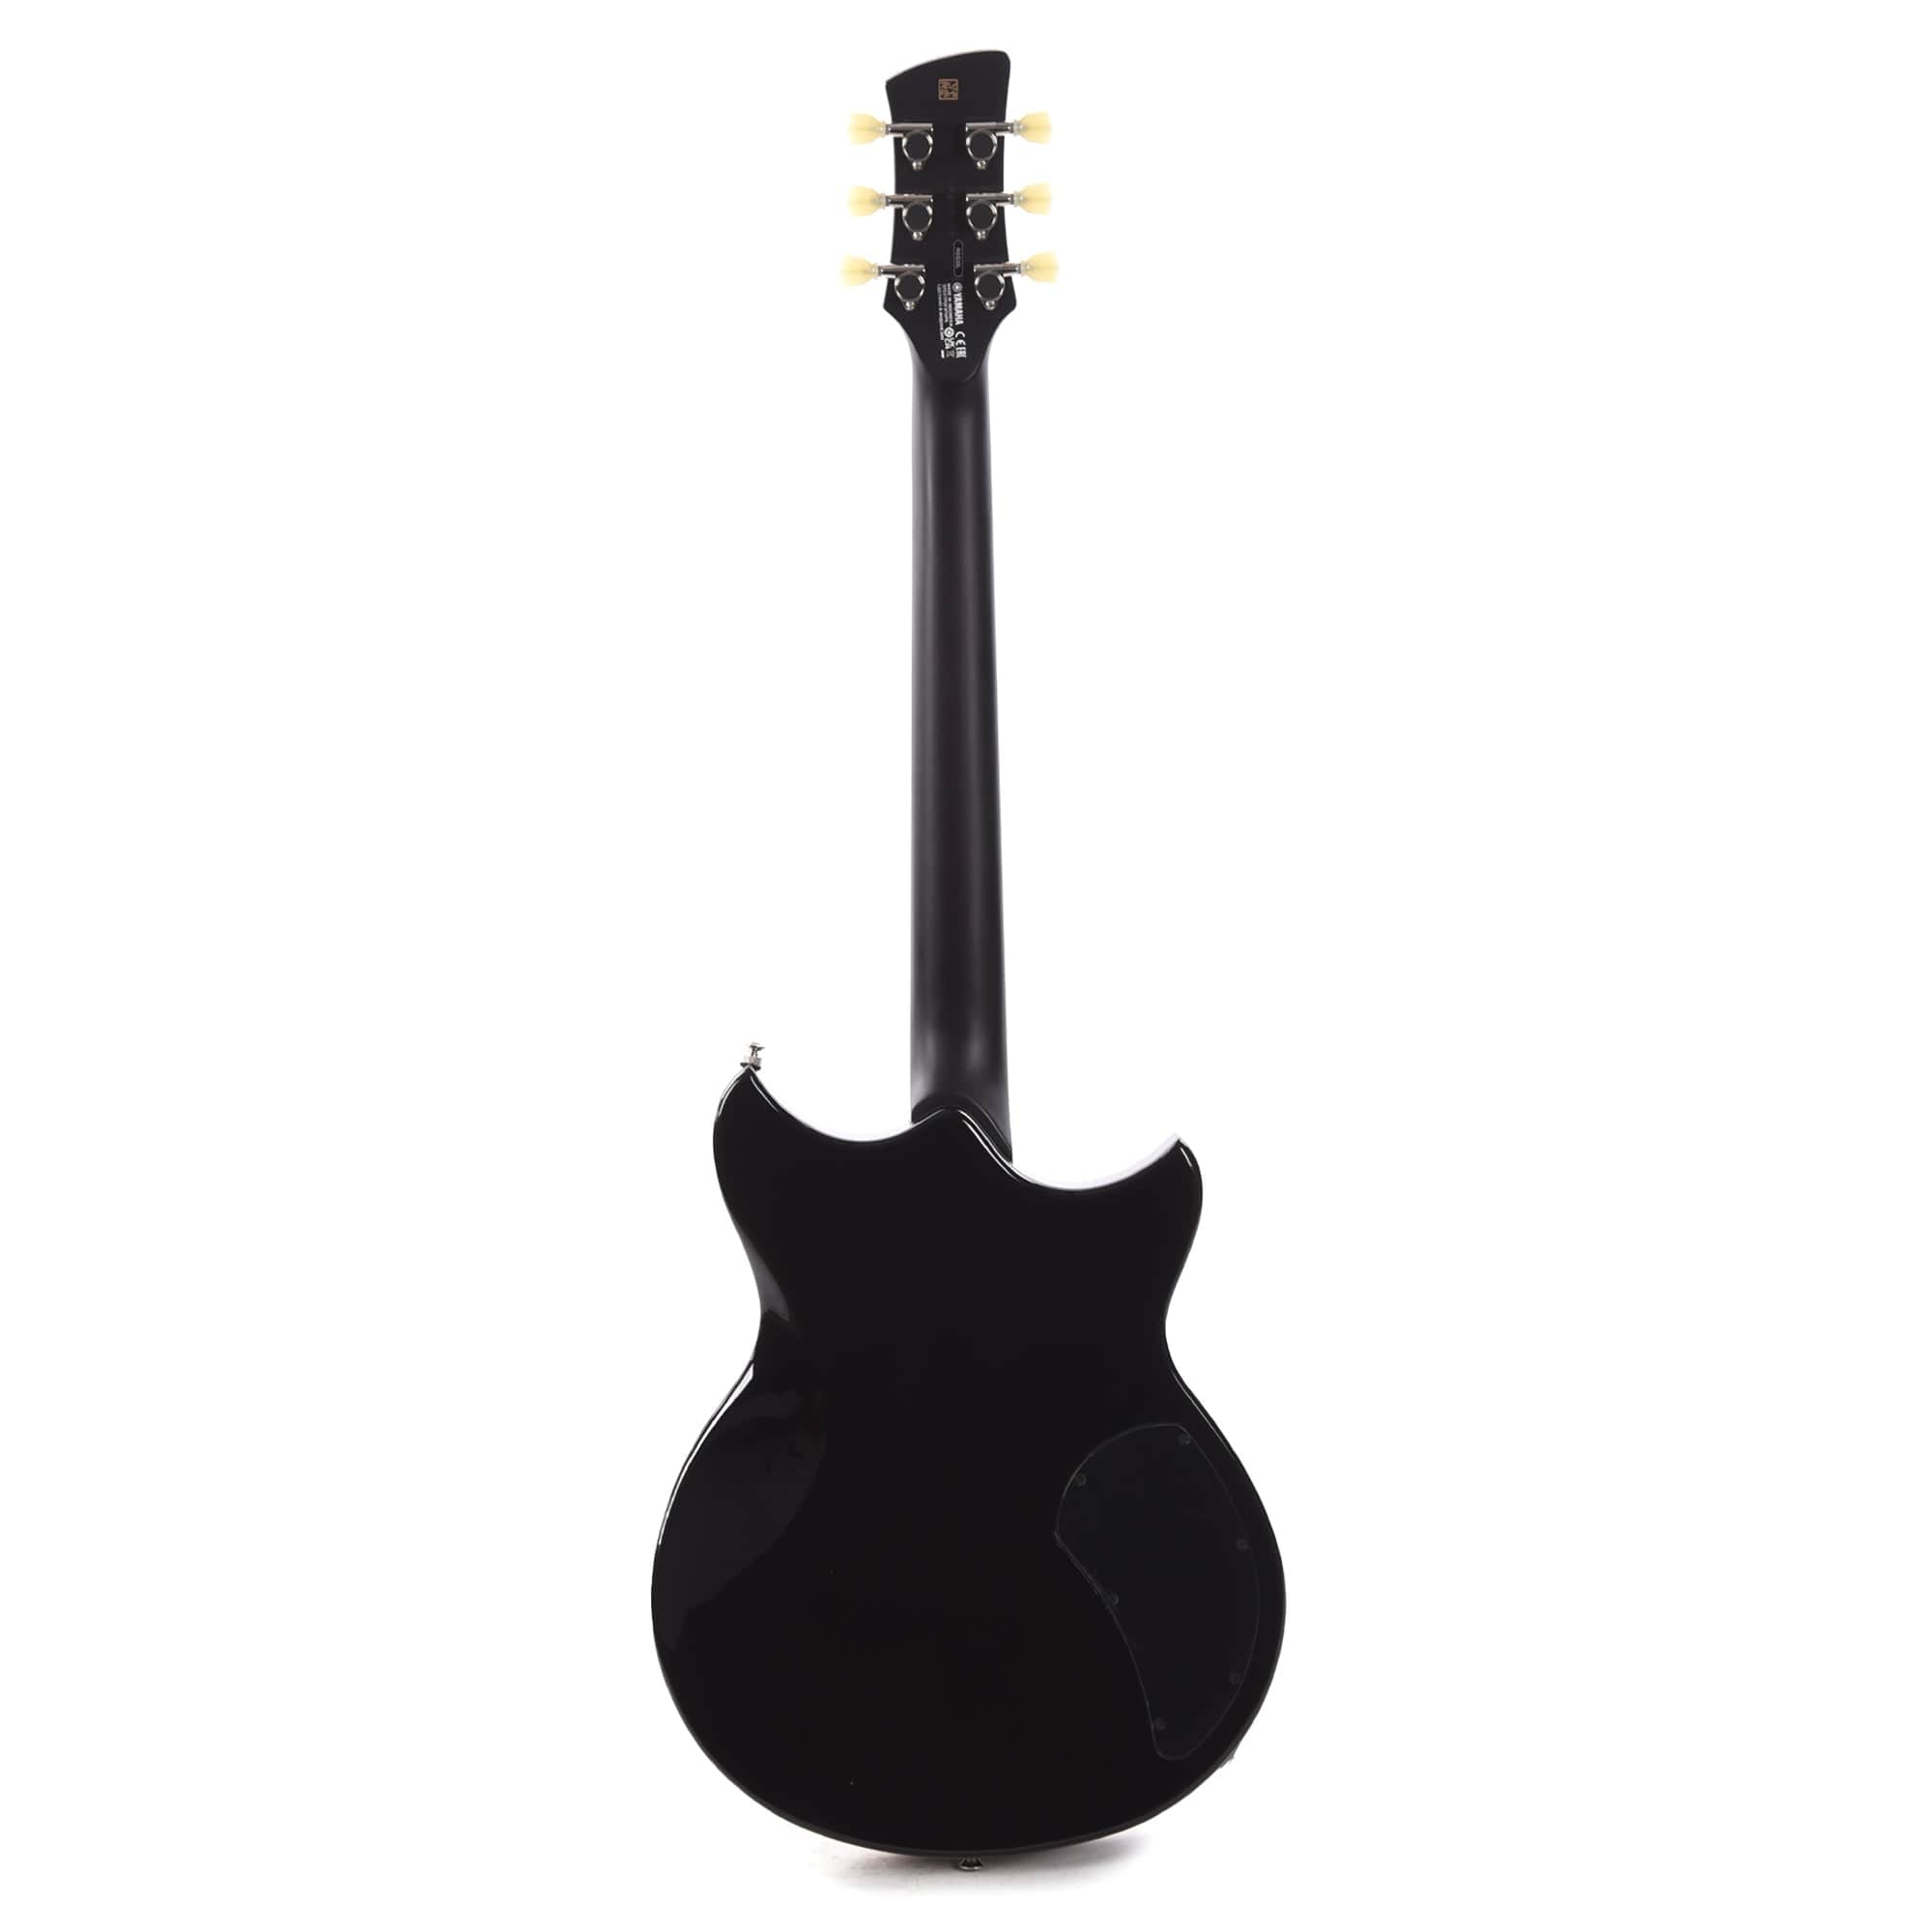 Yamaha Revstar Standard RSS20 LEFTY Black Electric Guitars / Left-Handed